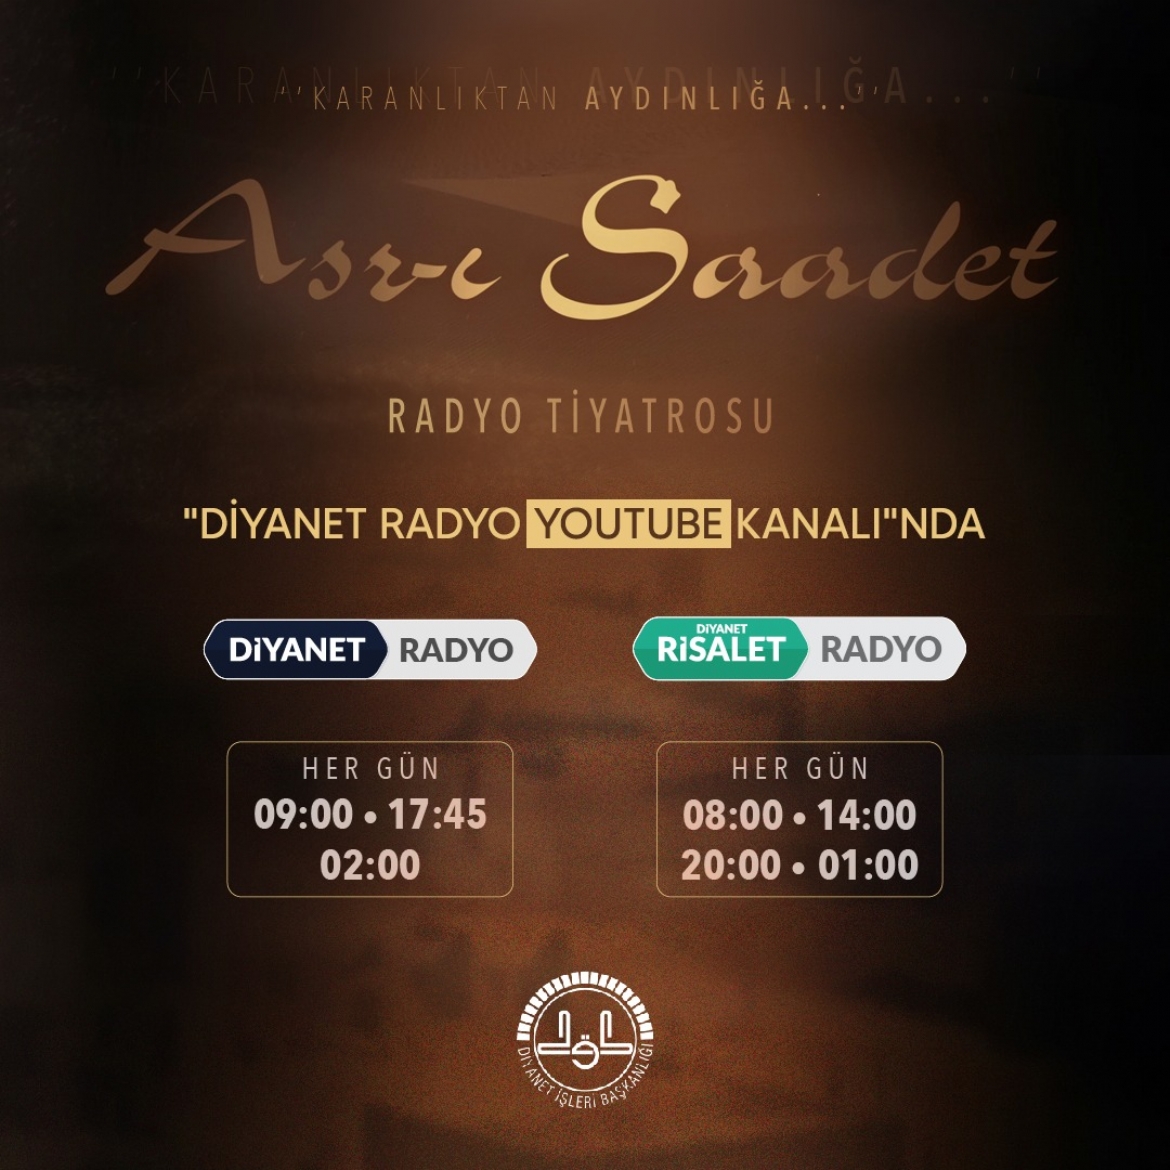 'Asr-ı Saadet Radyo Tiyatrosu' Diyanet Radyo YouTube Kanalında...